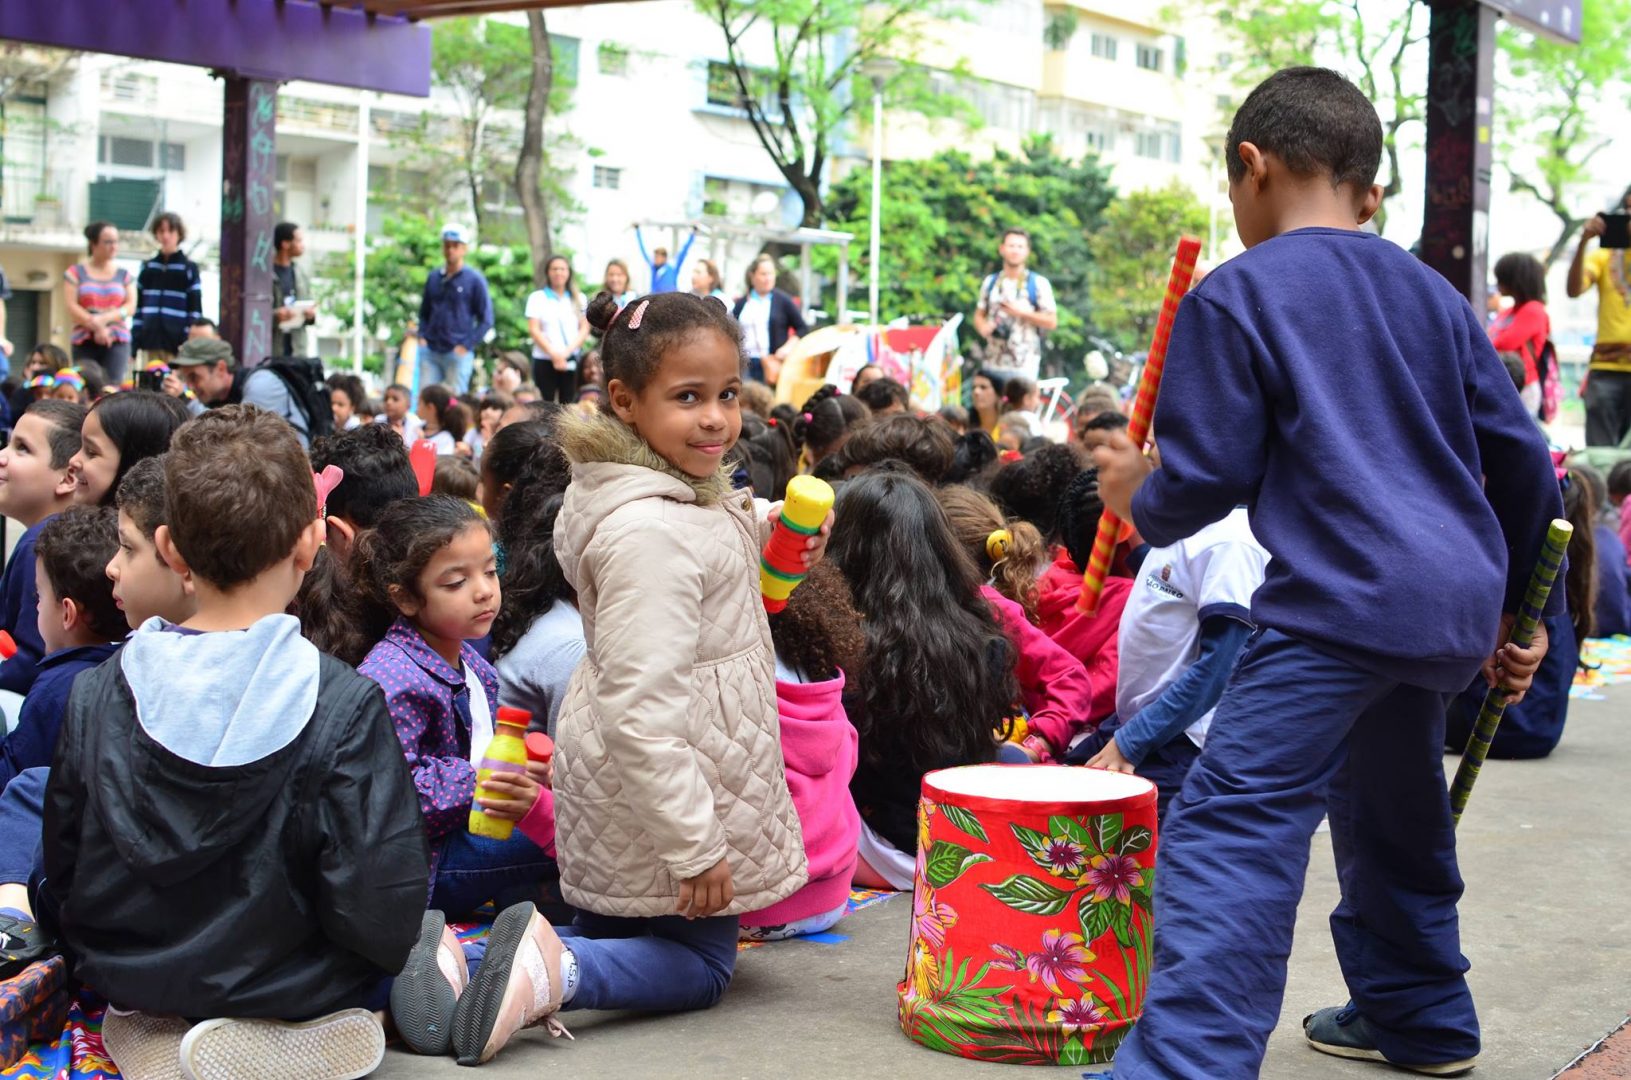 Foto de milhares de crianças sentadas no chão participando de ações coletivas. Uma menina está ajoelhada com um tambor colorido ao seu lado